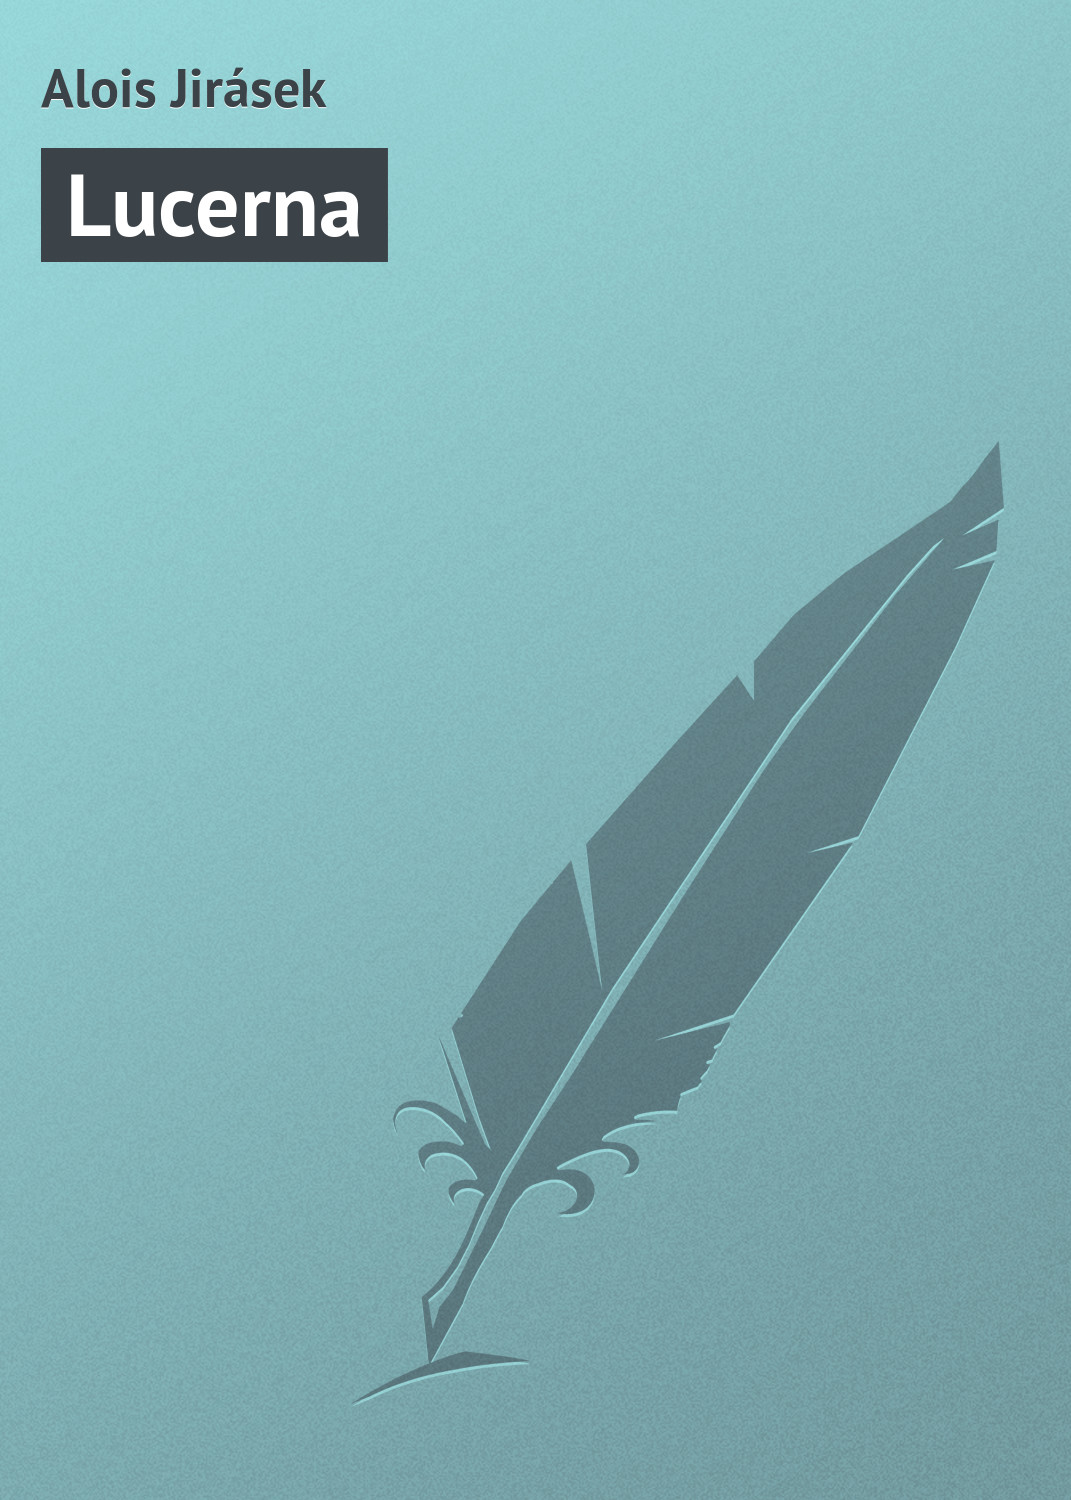 Книга Lucerna из серии , созданная Jirásek Alois, может относится к жанру Зарубежная старинная литература, Зарубежная классика. Стоимость электронной книги Lucerna с идентификатором 20833814 составляет 5.99 руб.